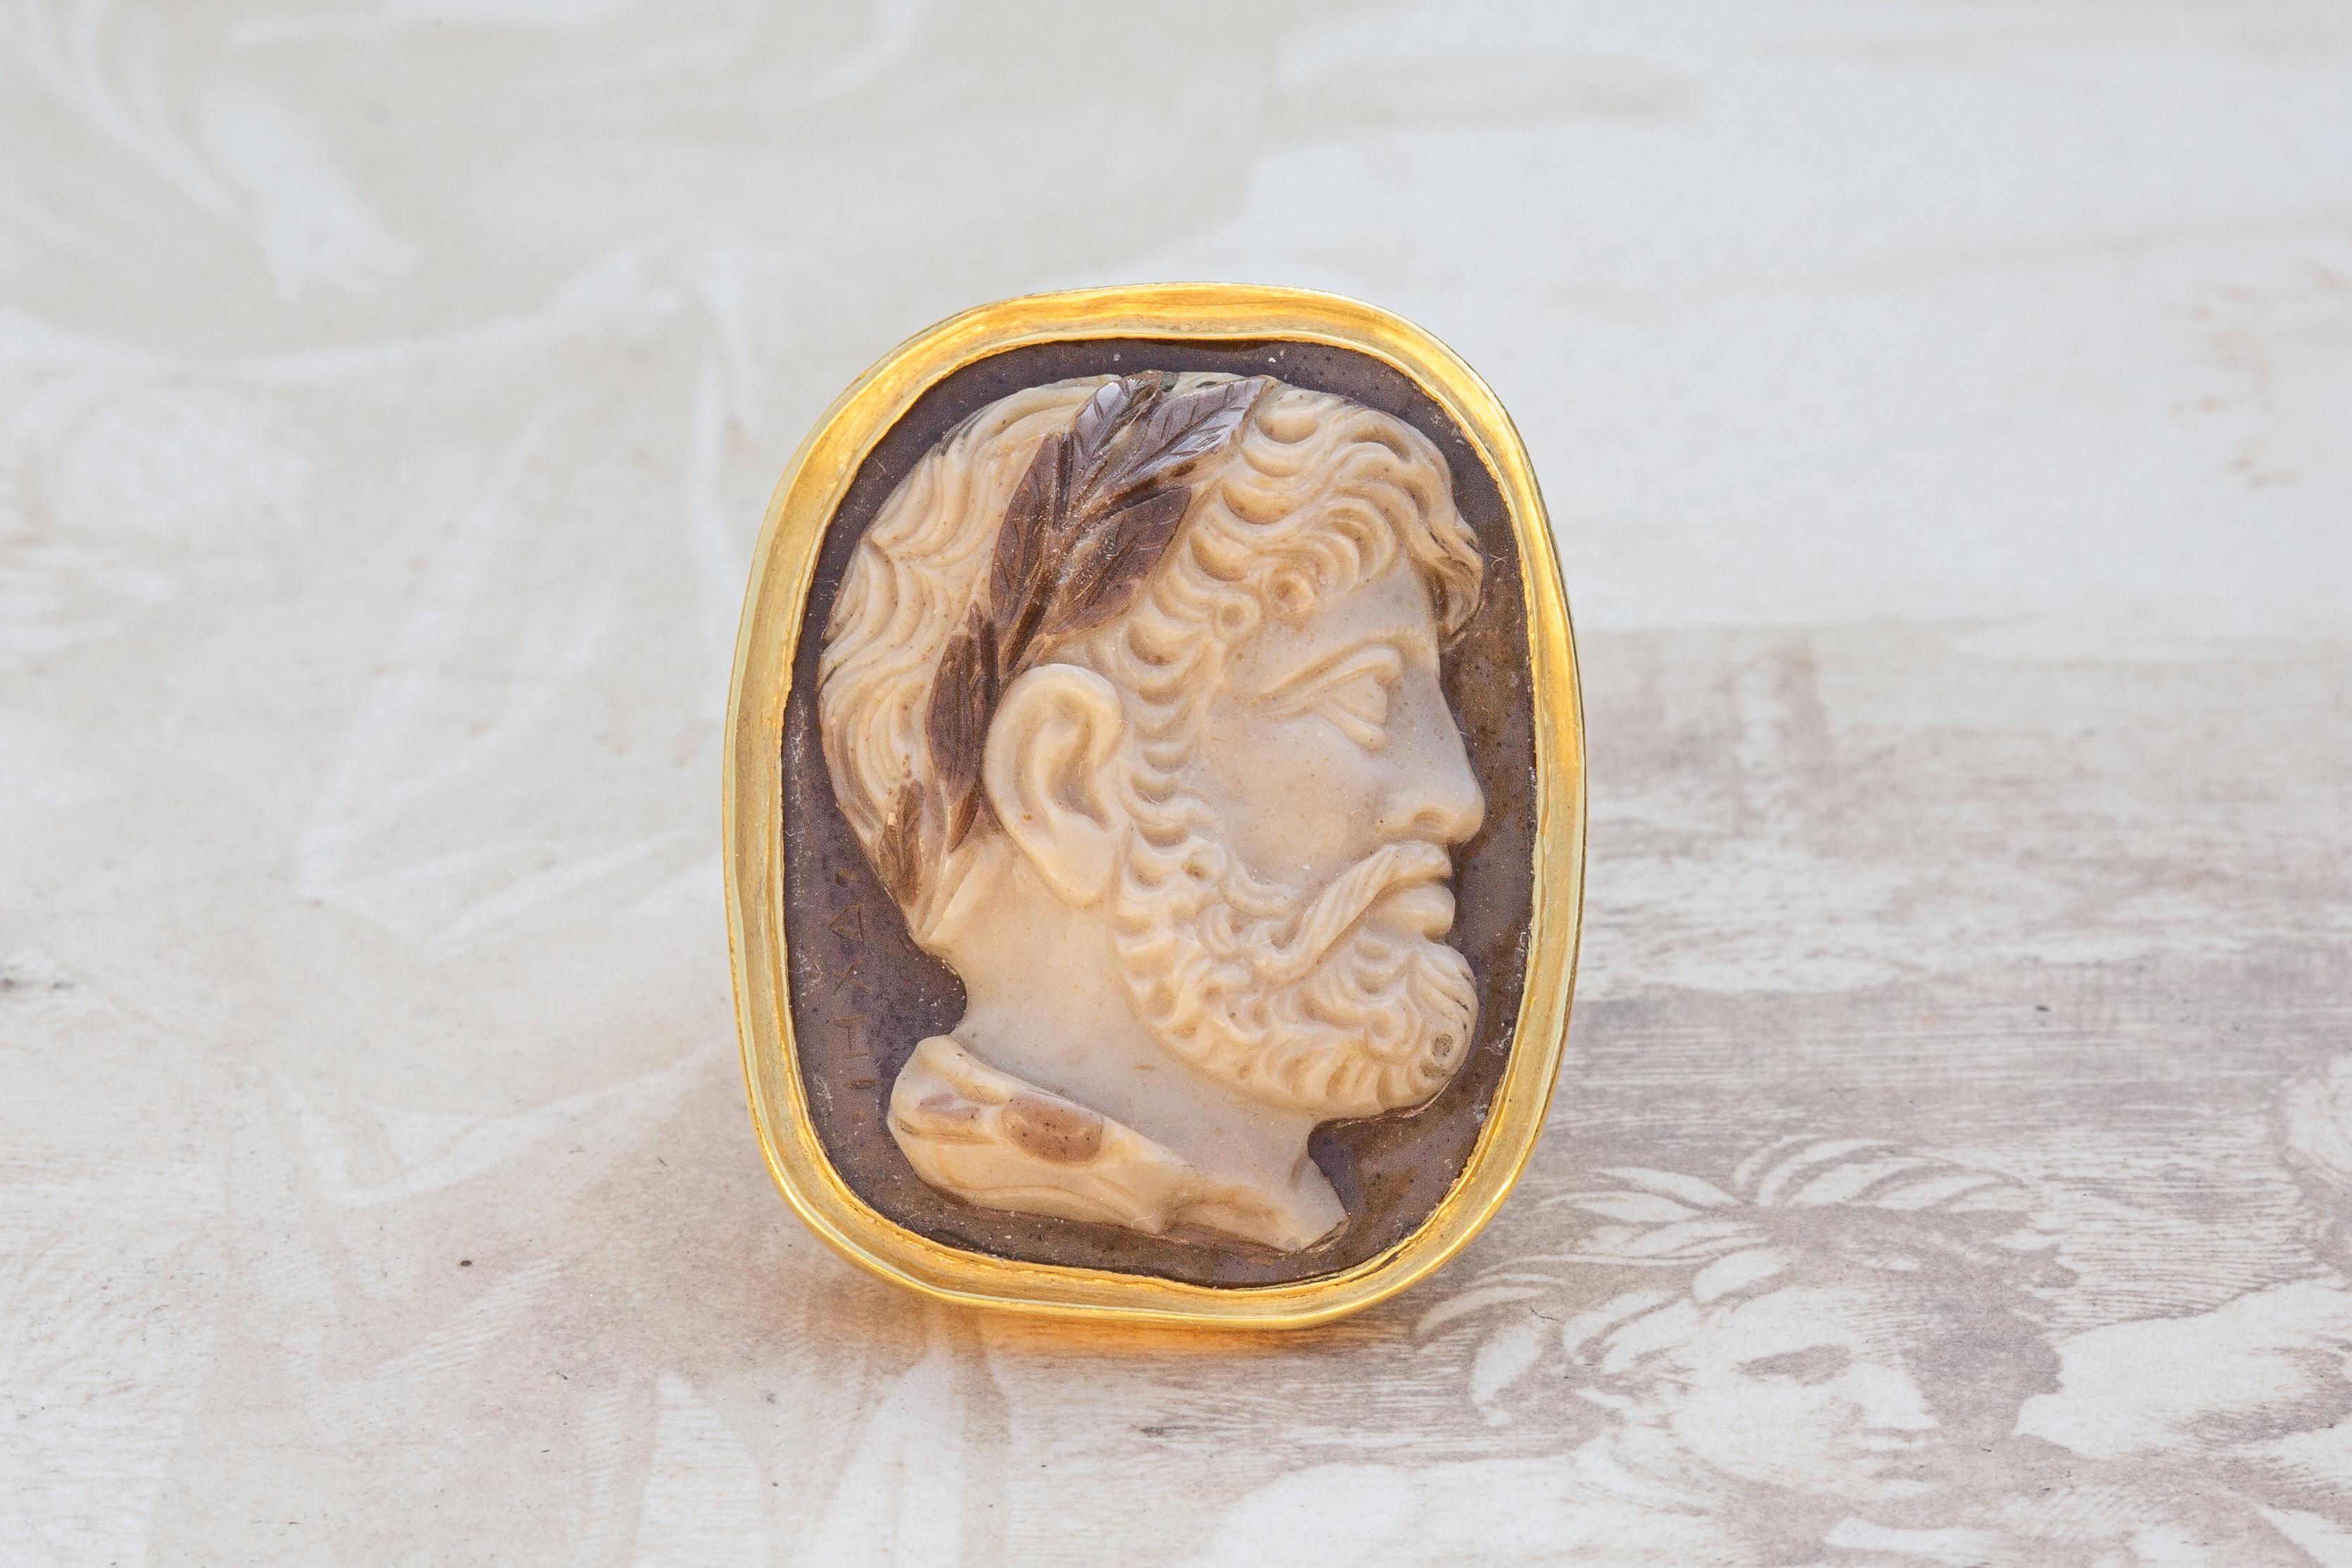 Rare camée italien en pierre dure du XVIIe siècle, serti dans une monture de chevalière en or à haute teneur en carats. Ce magnifique camée stratifié brun-crème est sculpté dans un seul morceau de jaspe pour révéler le portrait de l'empereur Hadrien